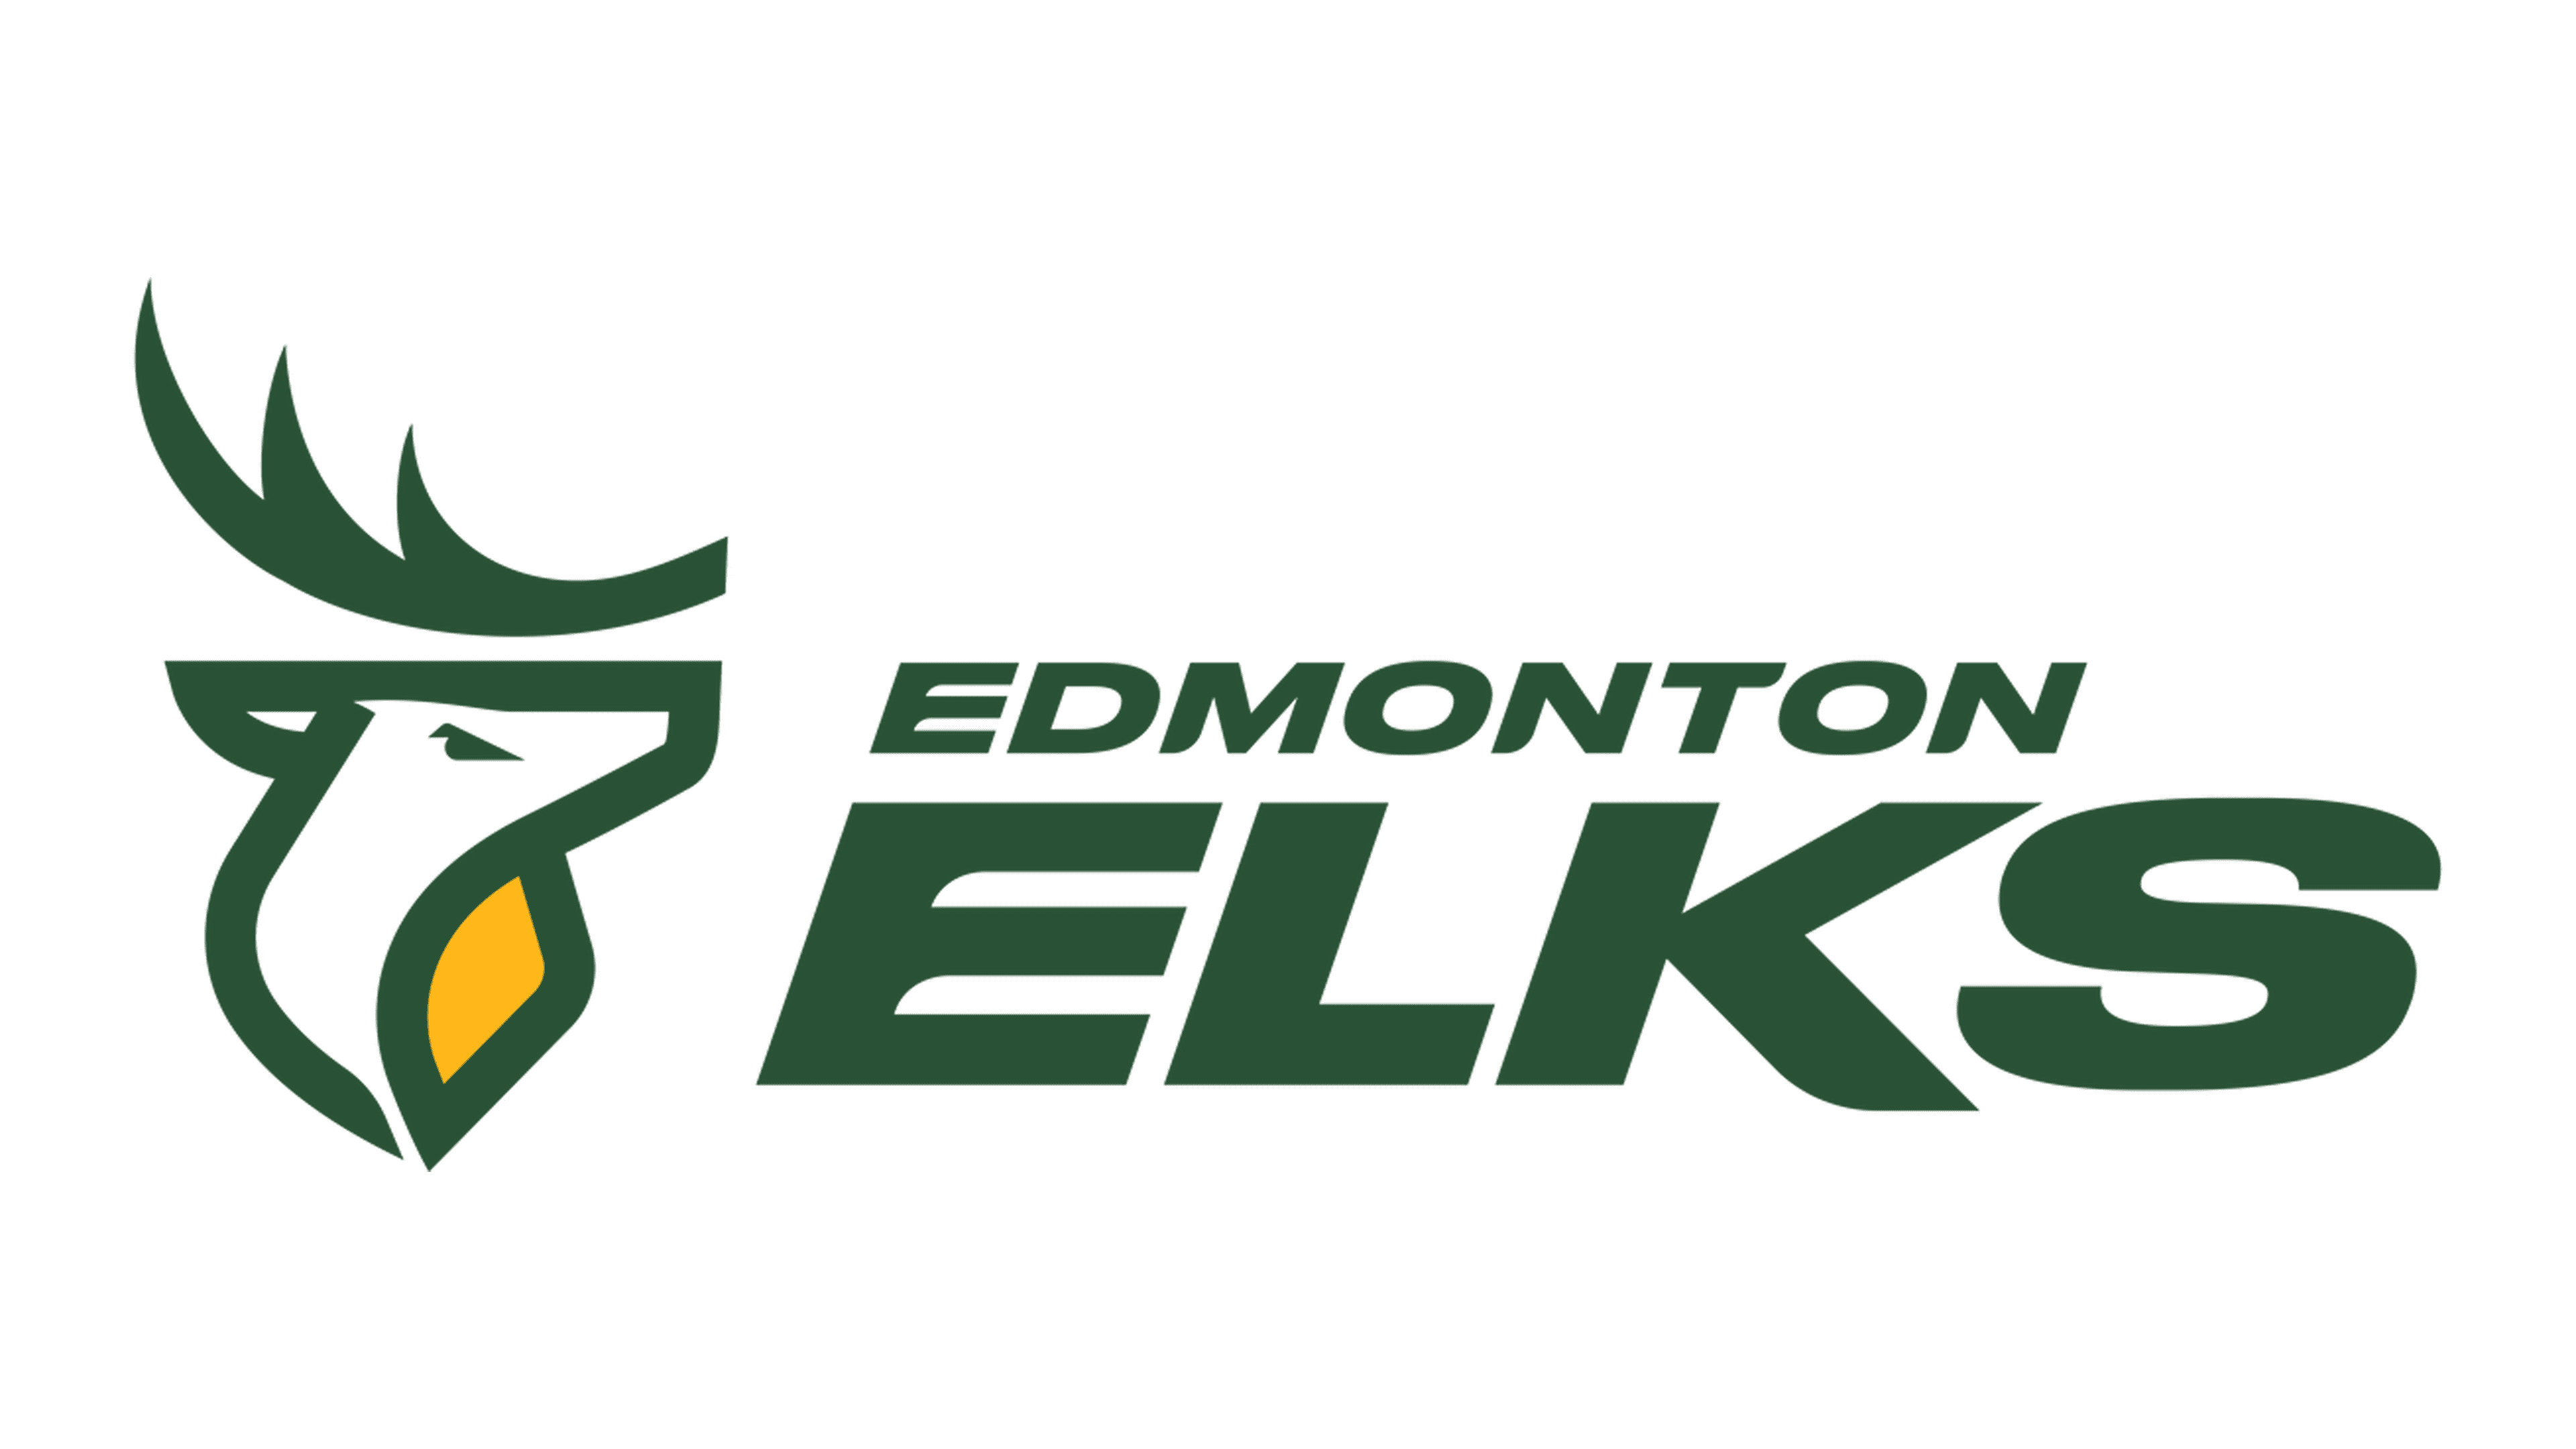 Edmonton-Elks-Logo